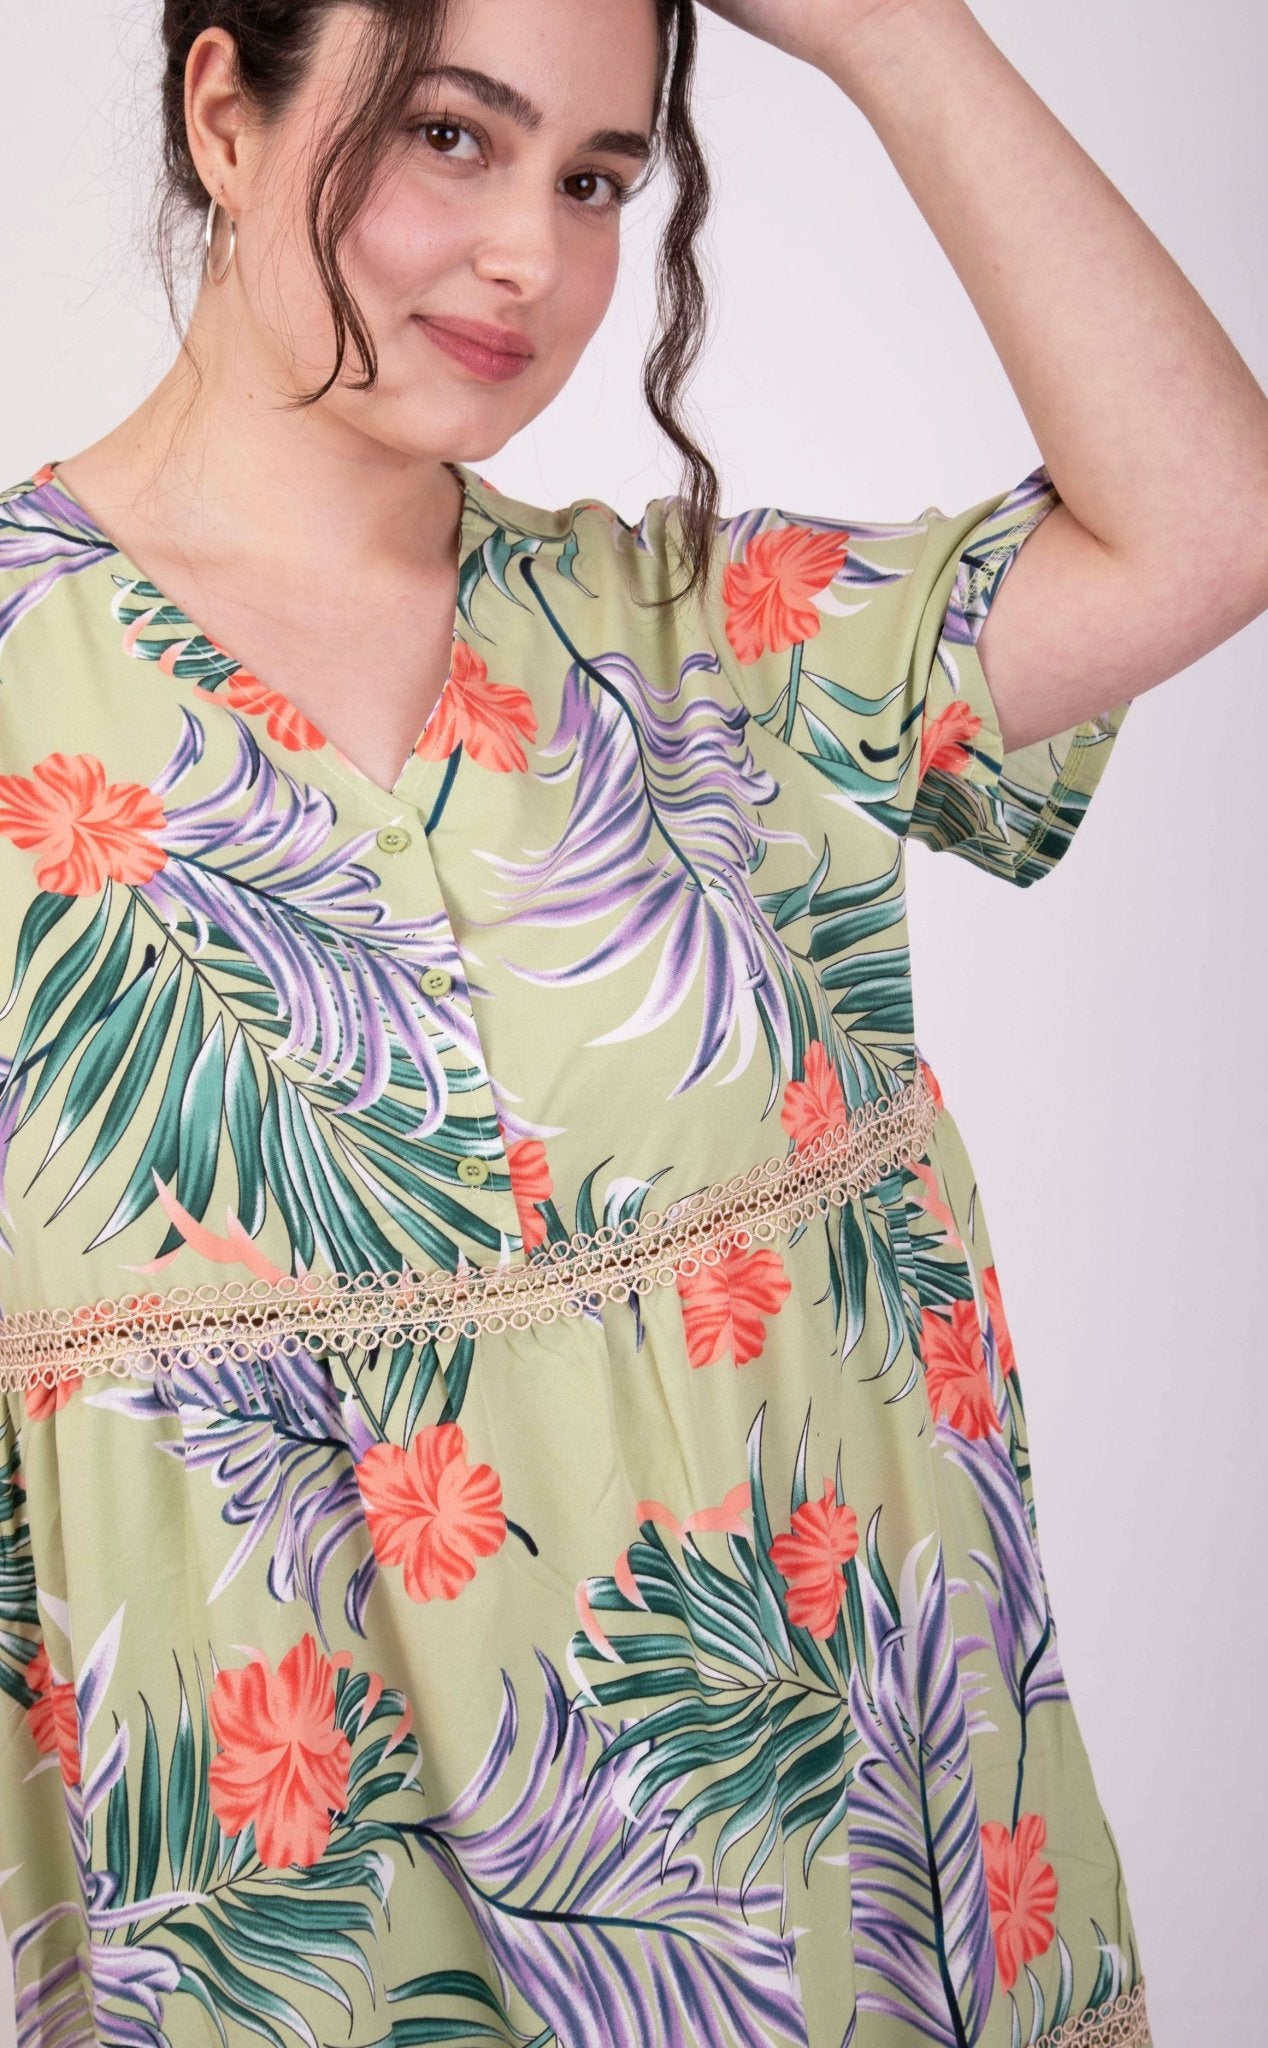 Sommerkleid mit floralem Muster: Ein luftiger Hingucker für heiße Tage - incurvy